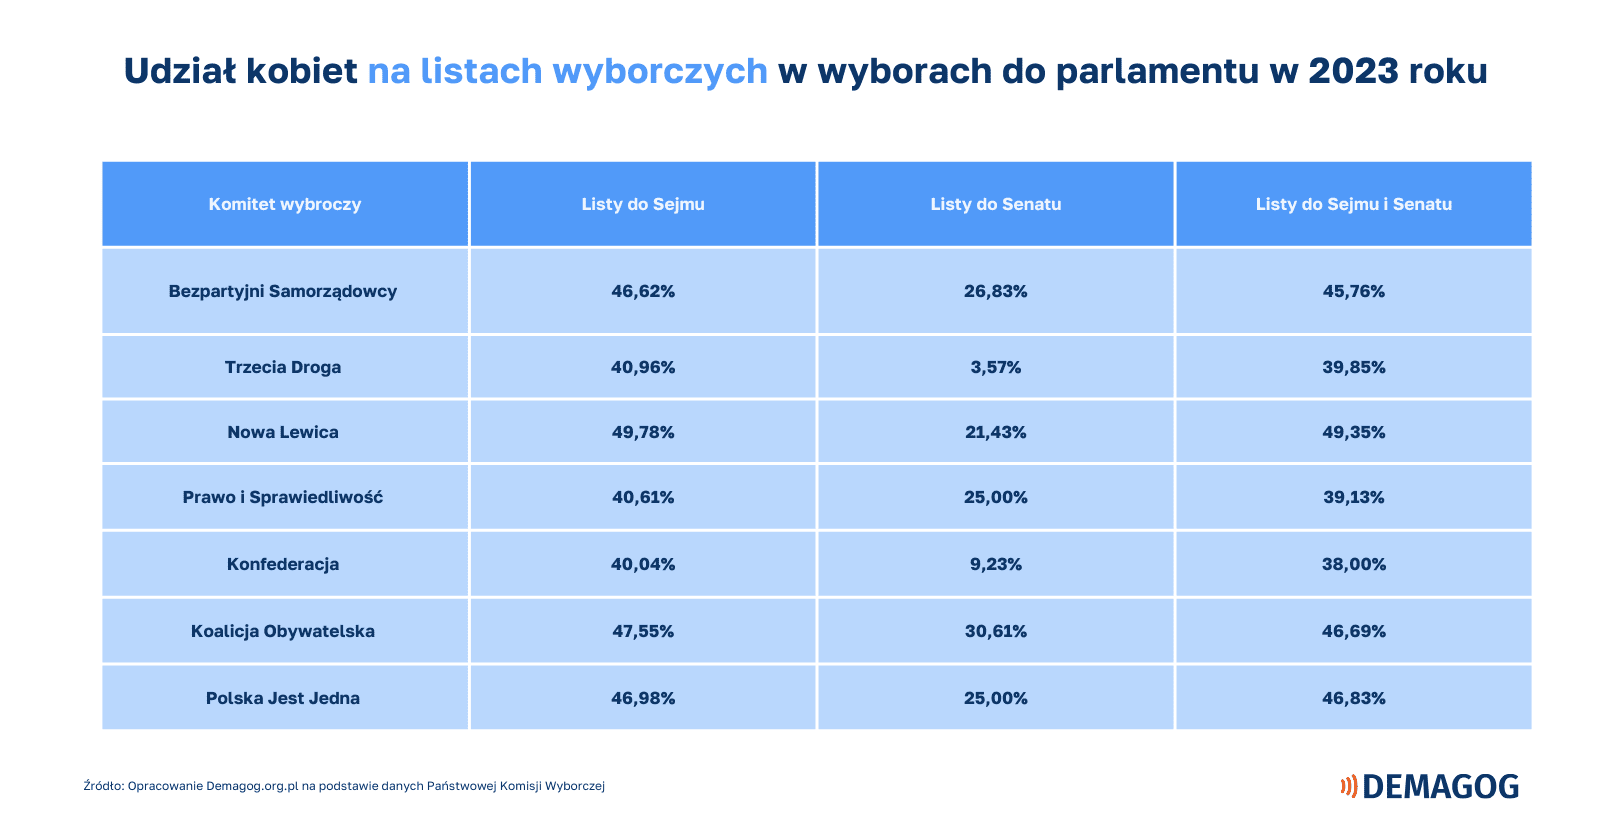 Tabela obrazuje procentowy udział kobiet na listach wyborczych poszczególnych ogólnopolskich komitetów wyborczych.